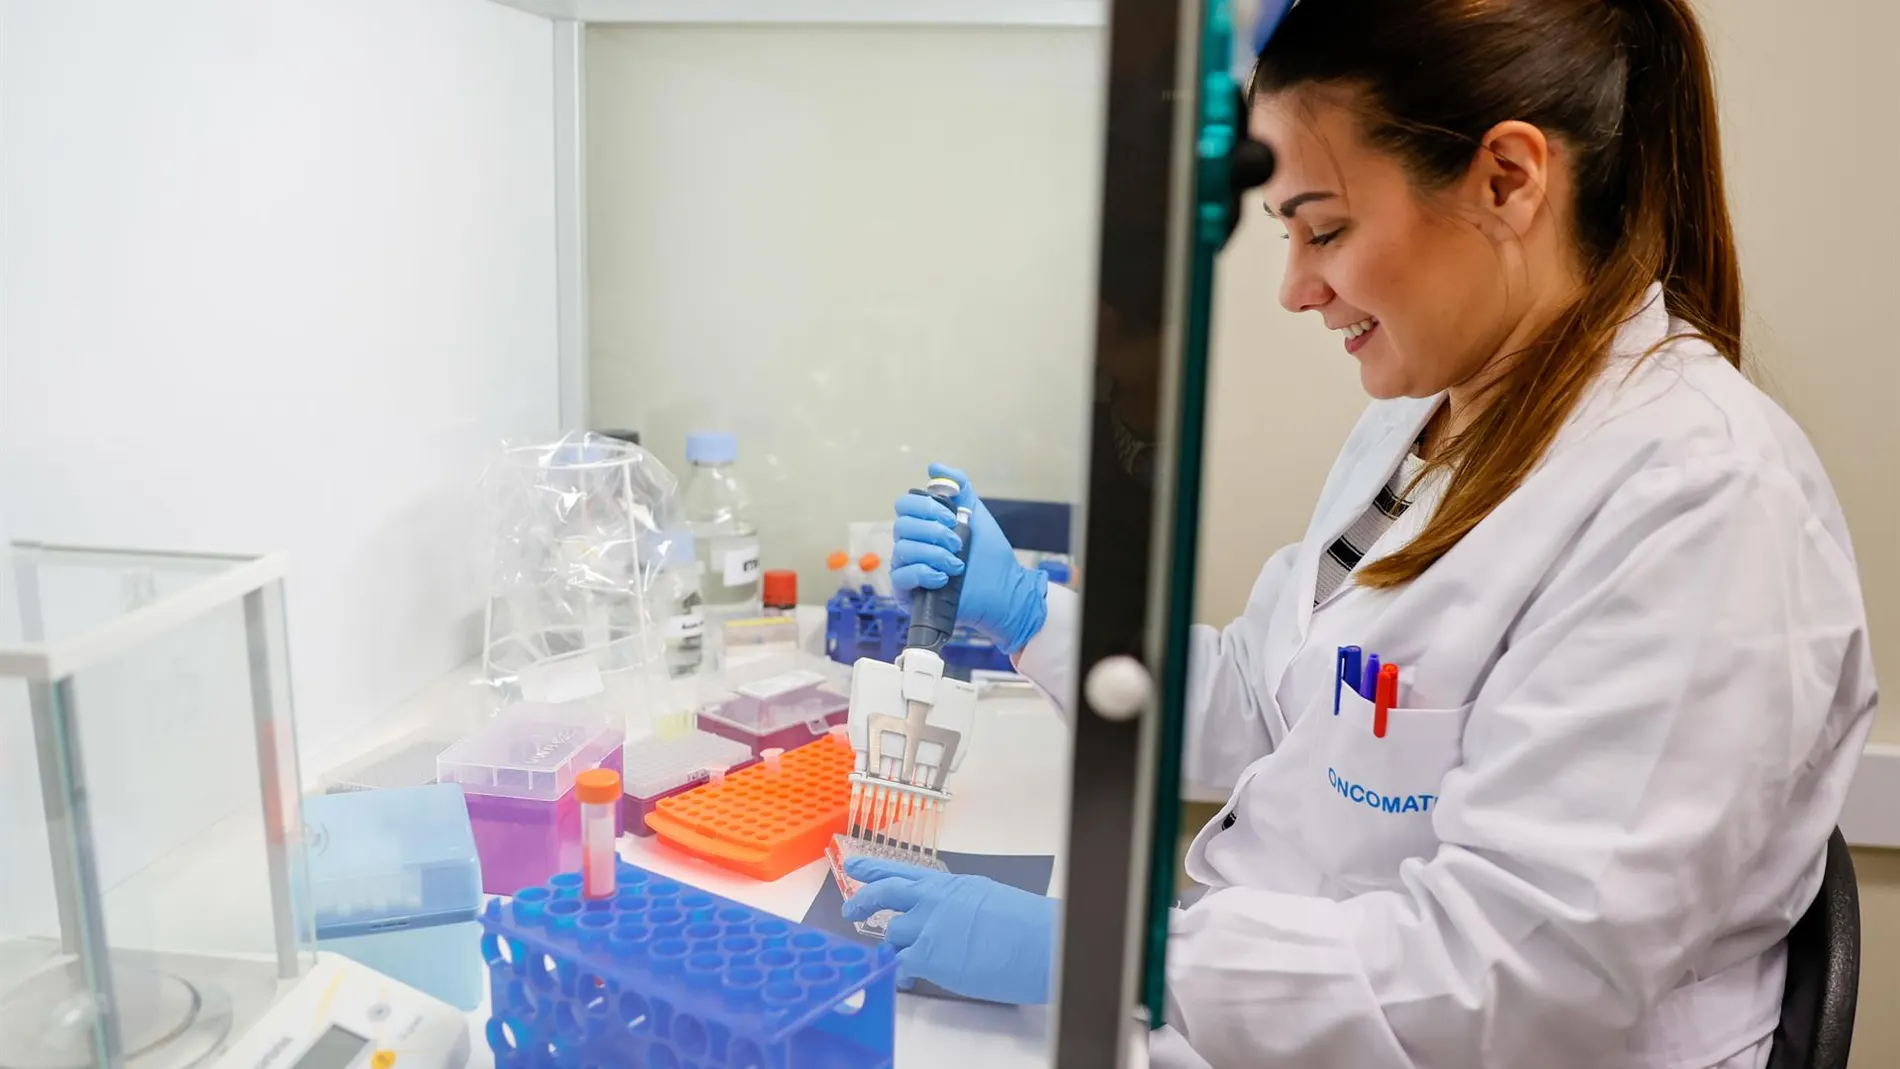 Una técnico realiza un análisis de un fármaco contra el cáncer en un laboratorio